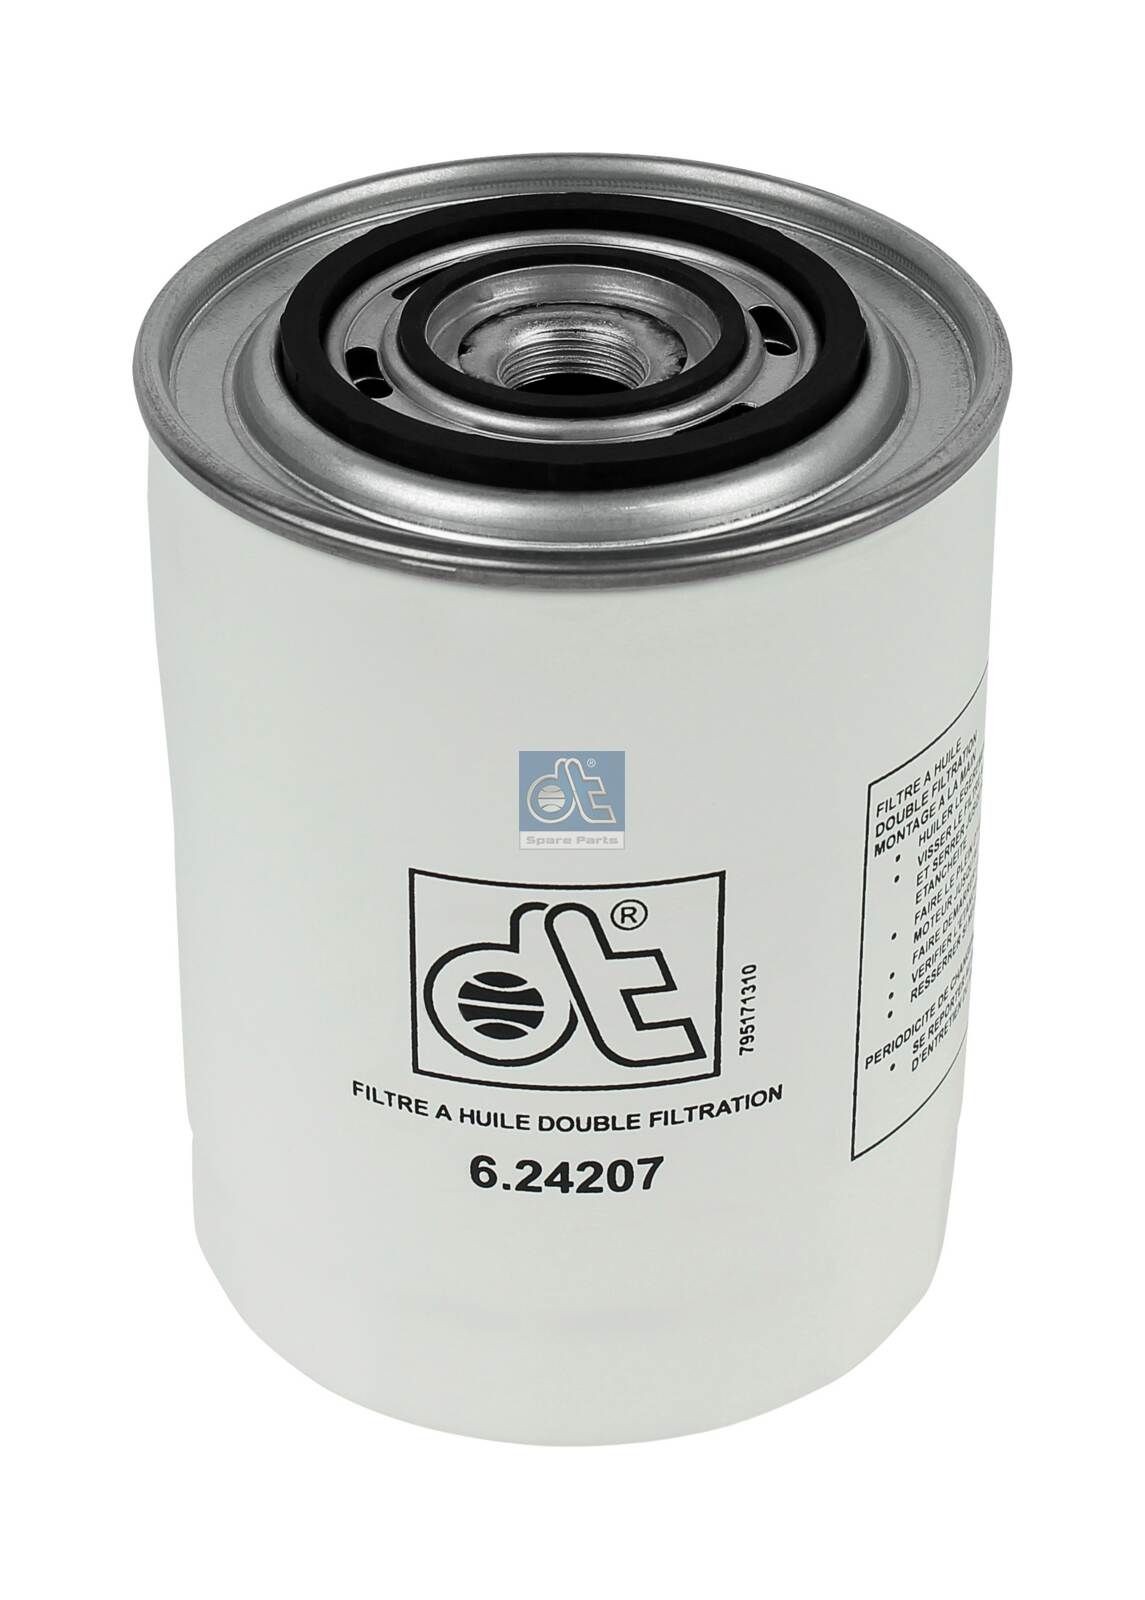 Renault MEGANE Oil filters 7341142 DT Spare Parts 6.24207 online buy